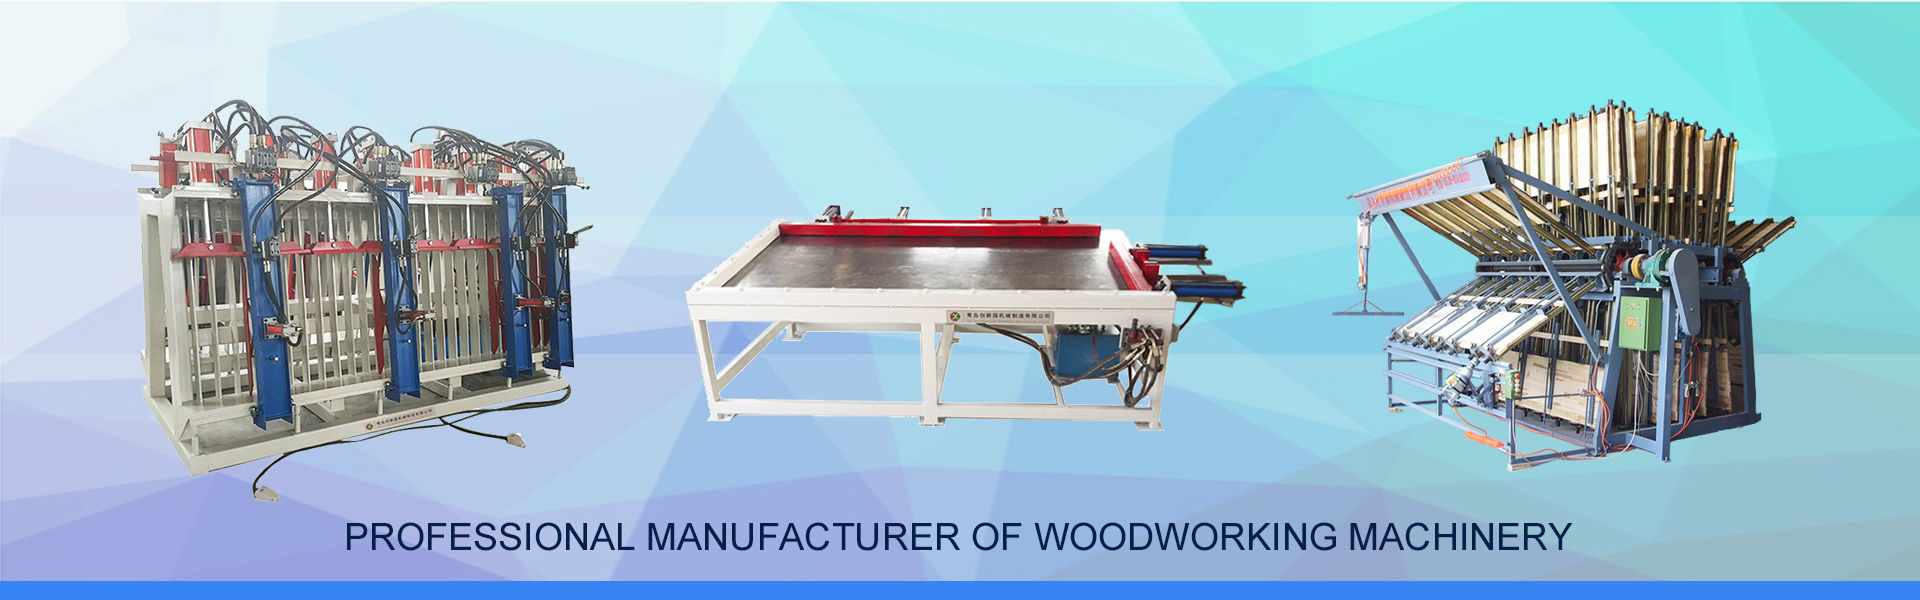 máquinas para trabalhar madeira, suporte de braçadeira hidráulica, serra de painel,QINGDAO CHUANGXINYUAN MACHINERY MANUFACTURING CO.,LTD